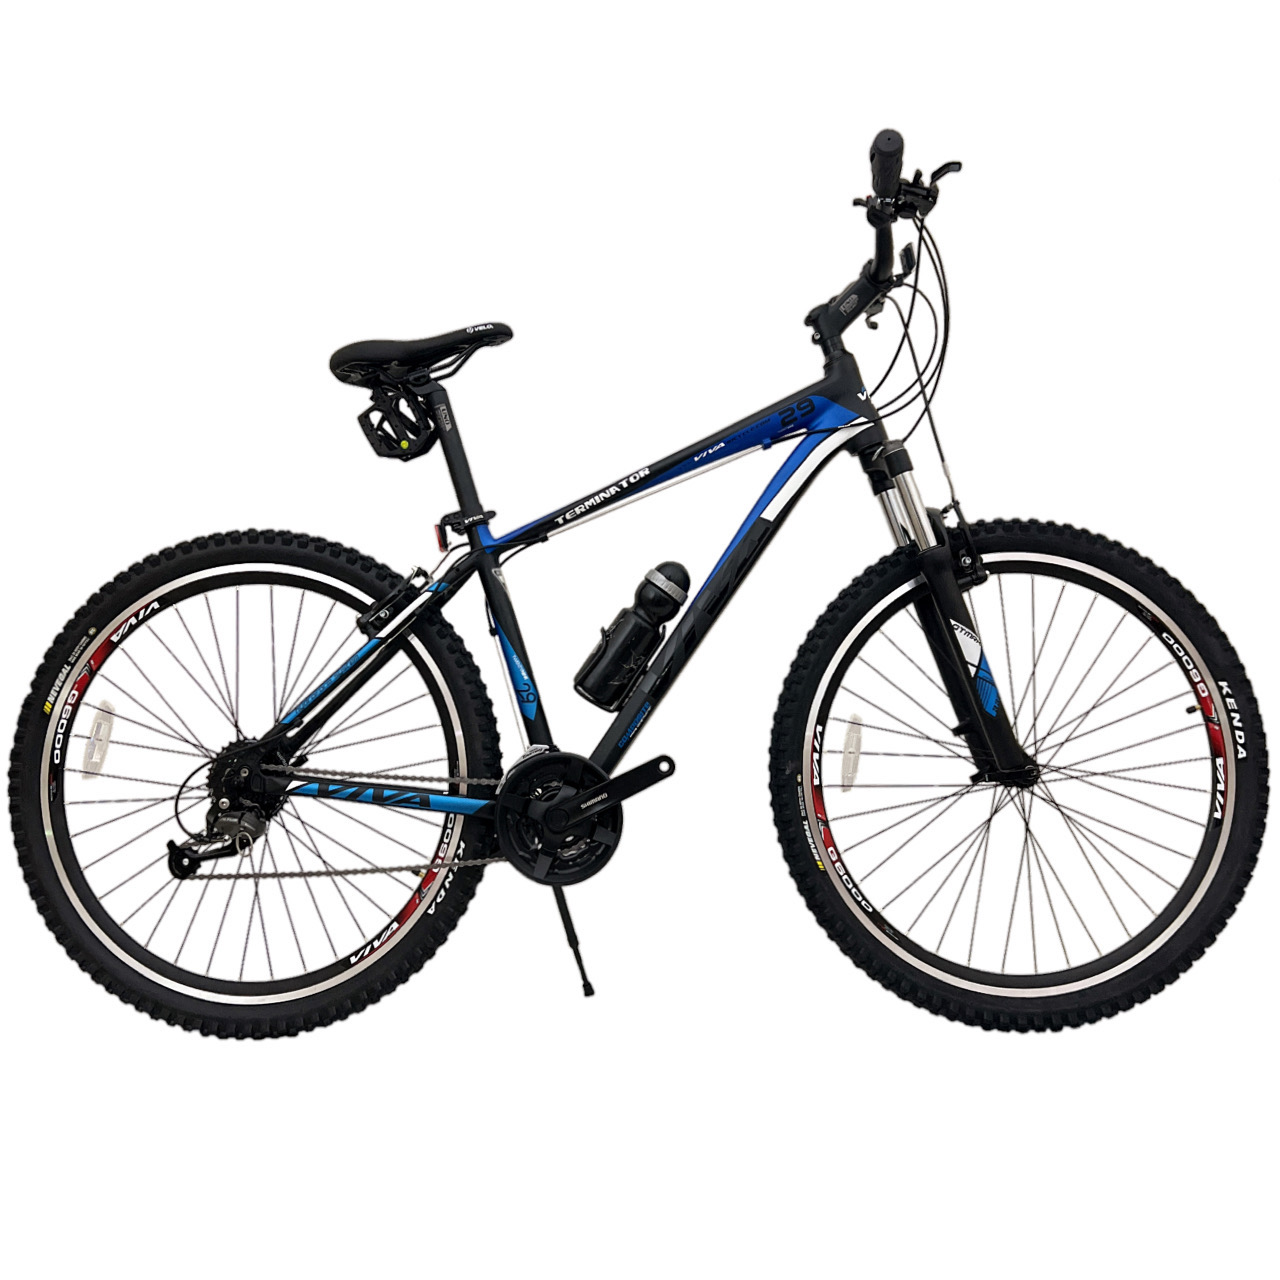 نکته خرید - قیمت روز دوچرخه کوهستان ویوا مدل TERMINATOR کد 200‌ سایز طوقه 29 خرید